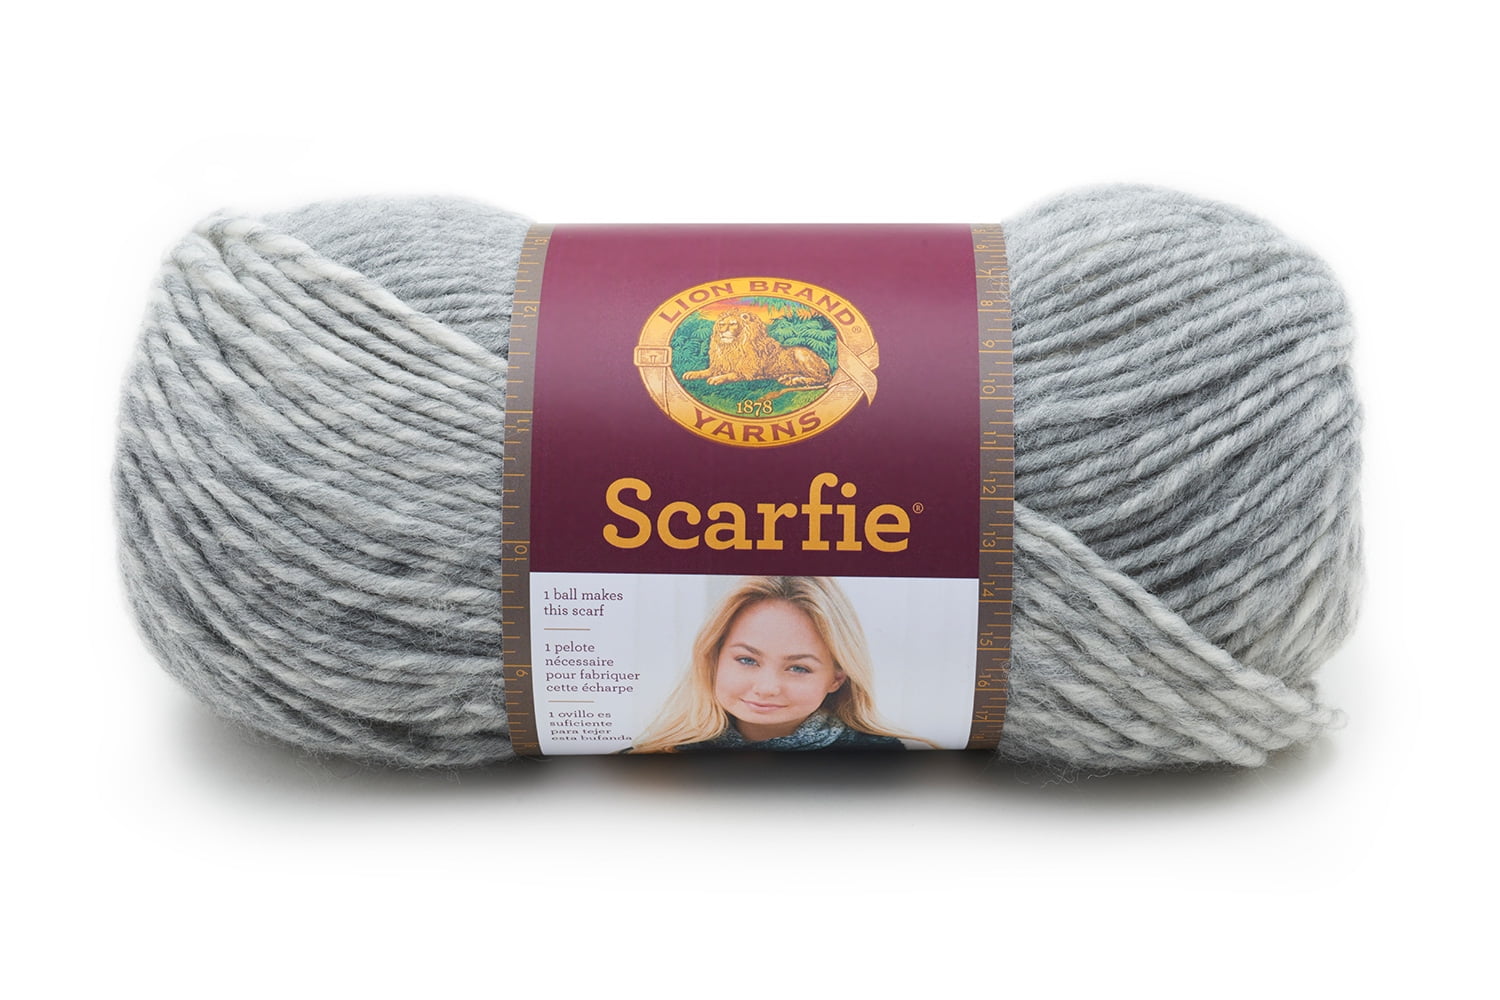 Lion Brand Scarfie Yarn - Cream/Silver